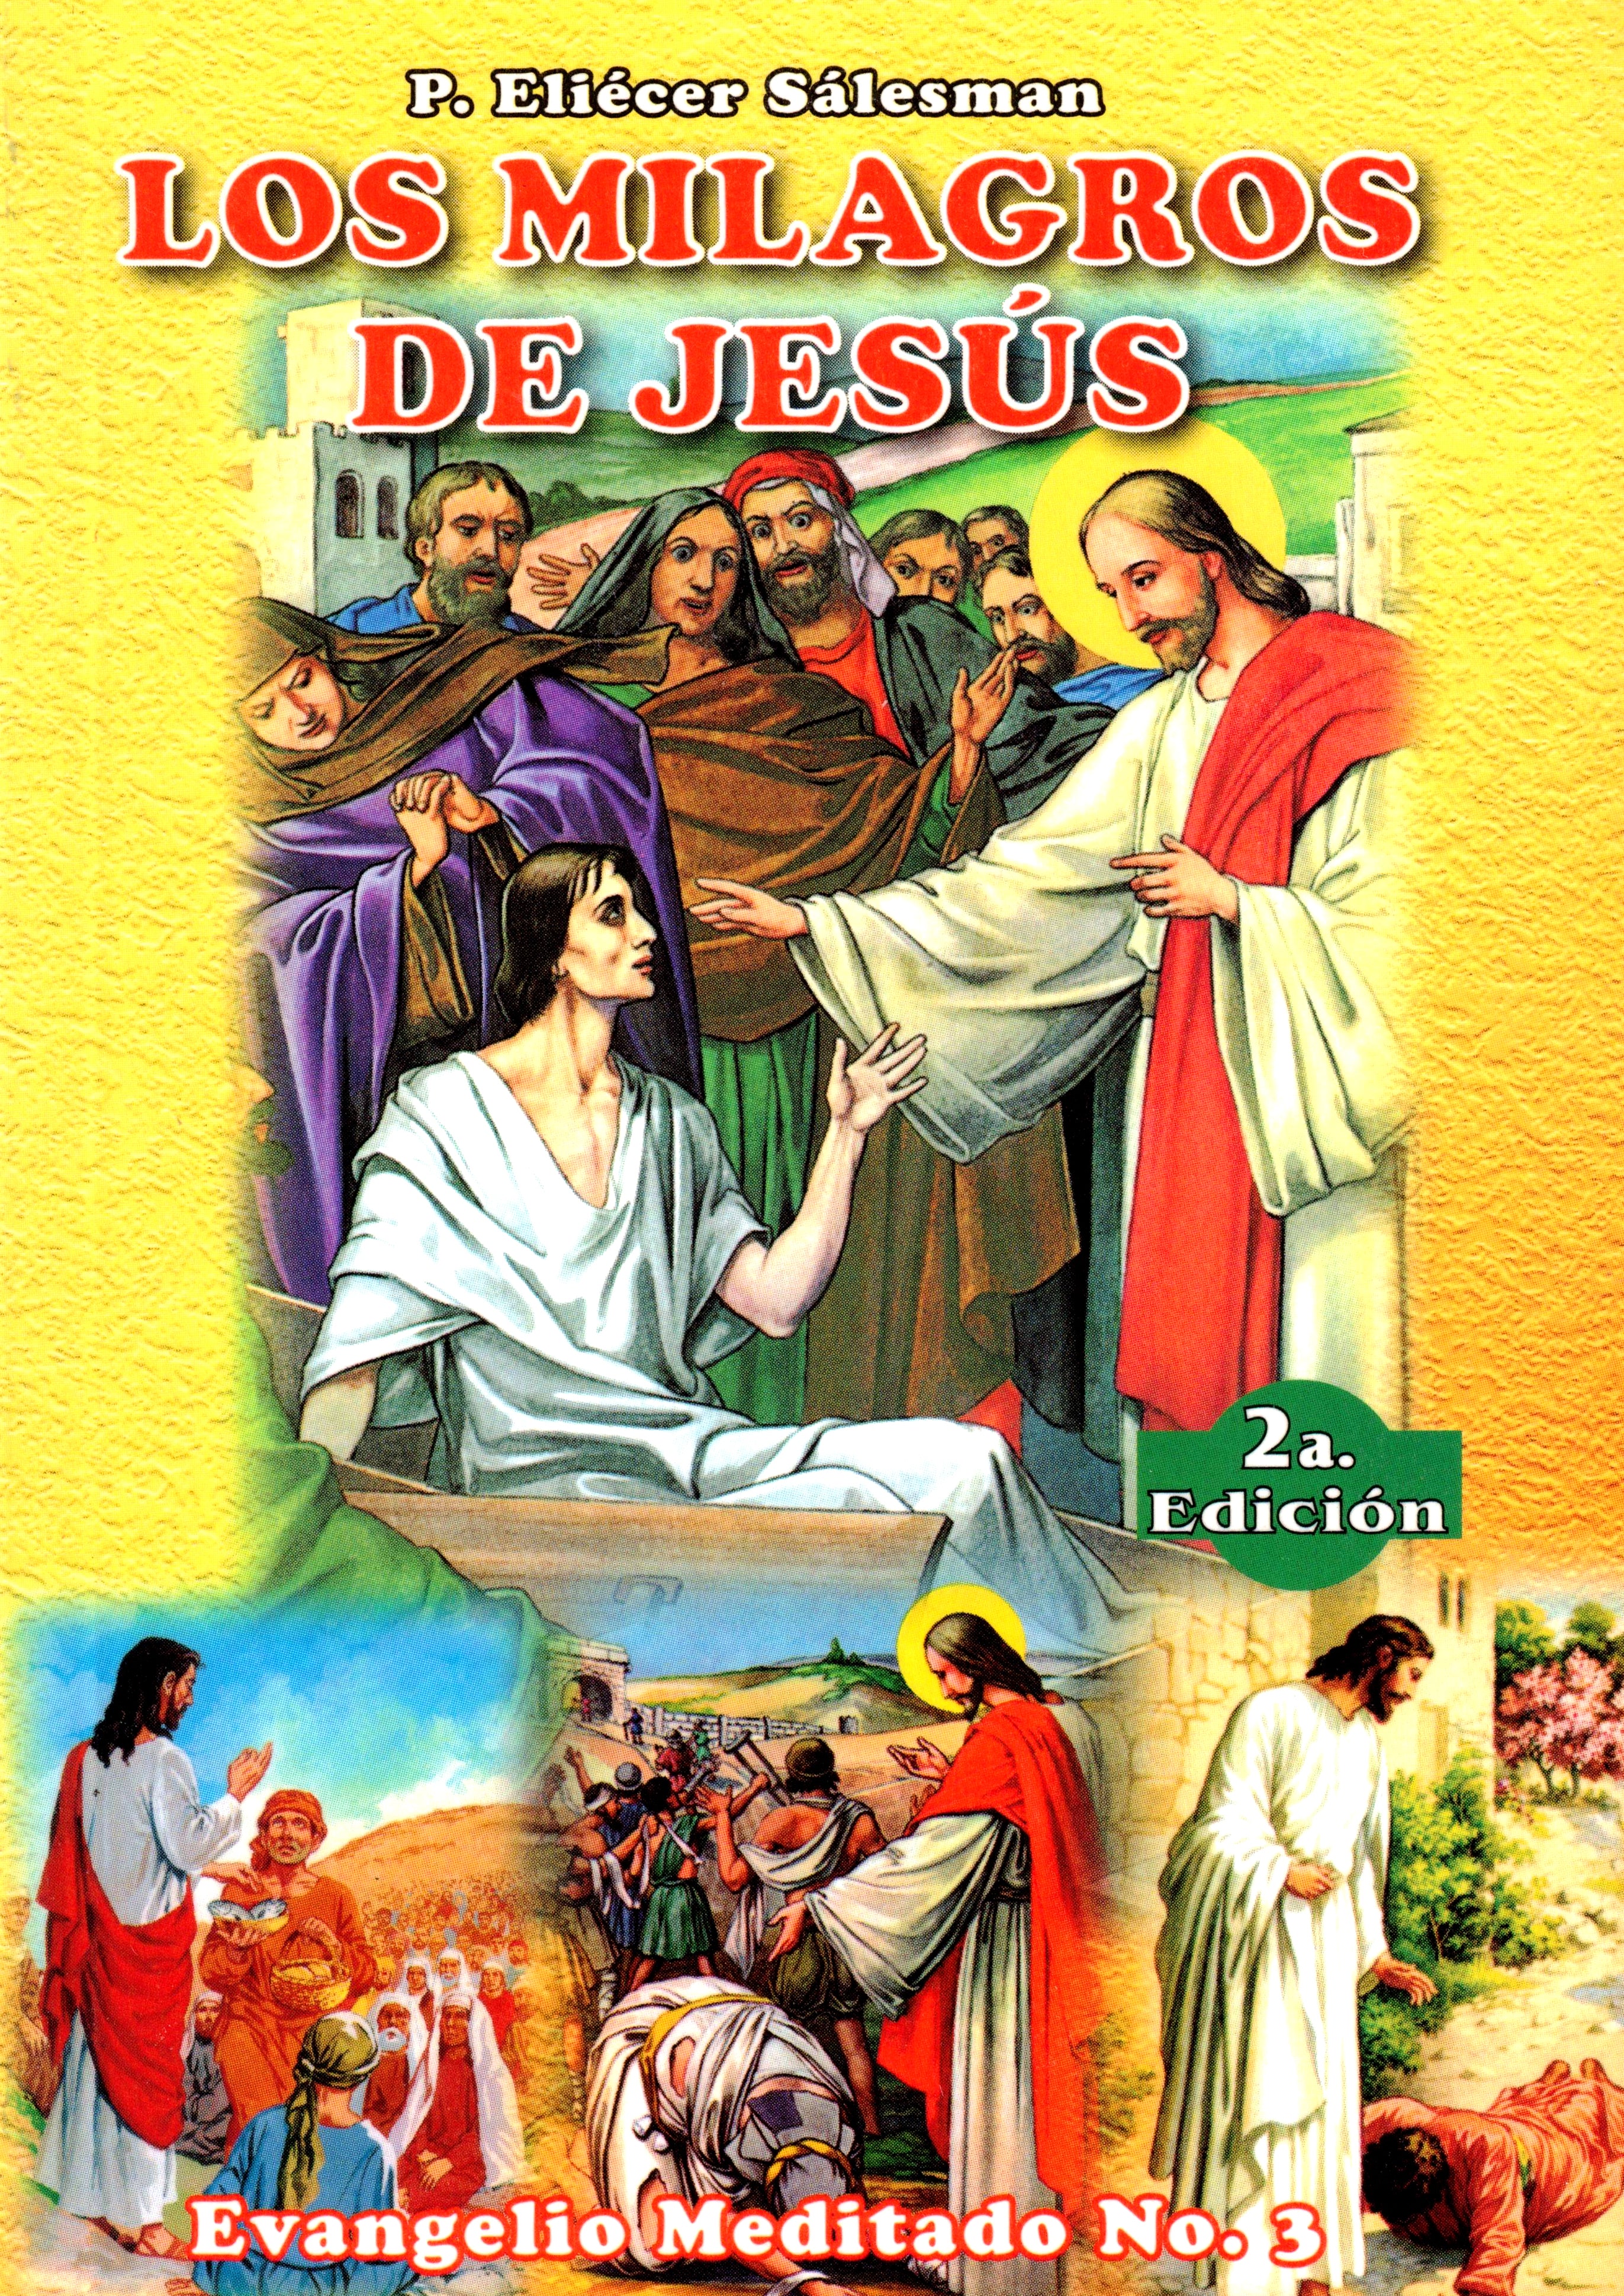 Los Milagros de Jesús